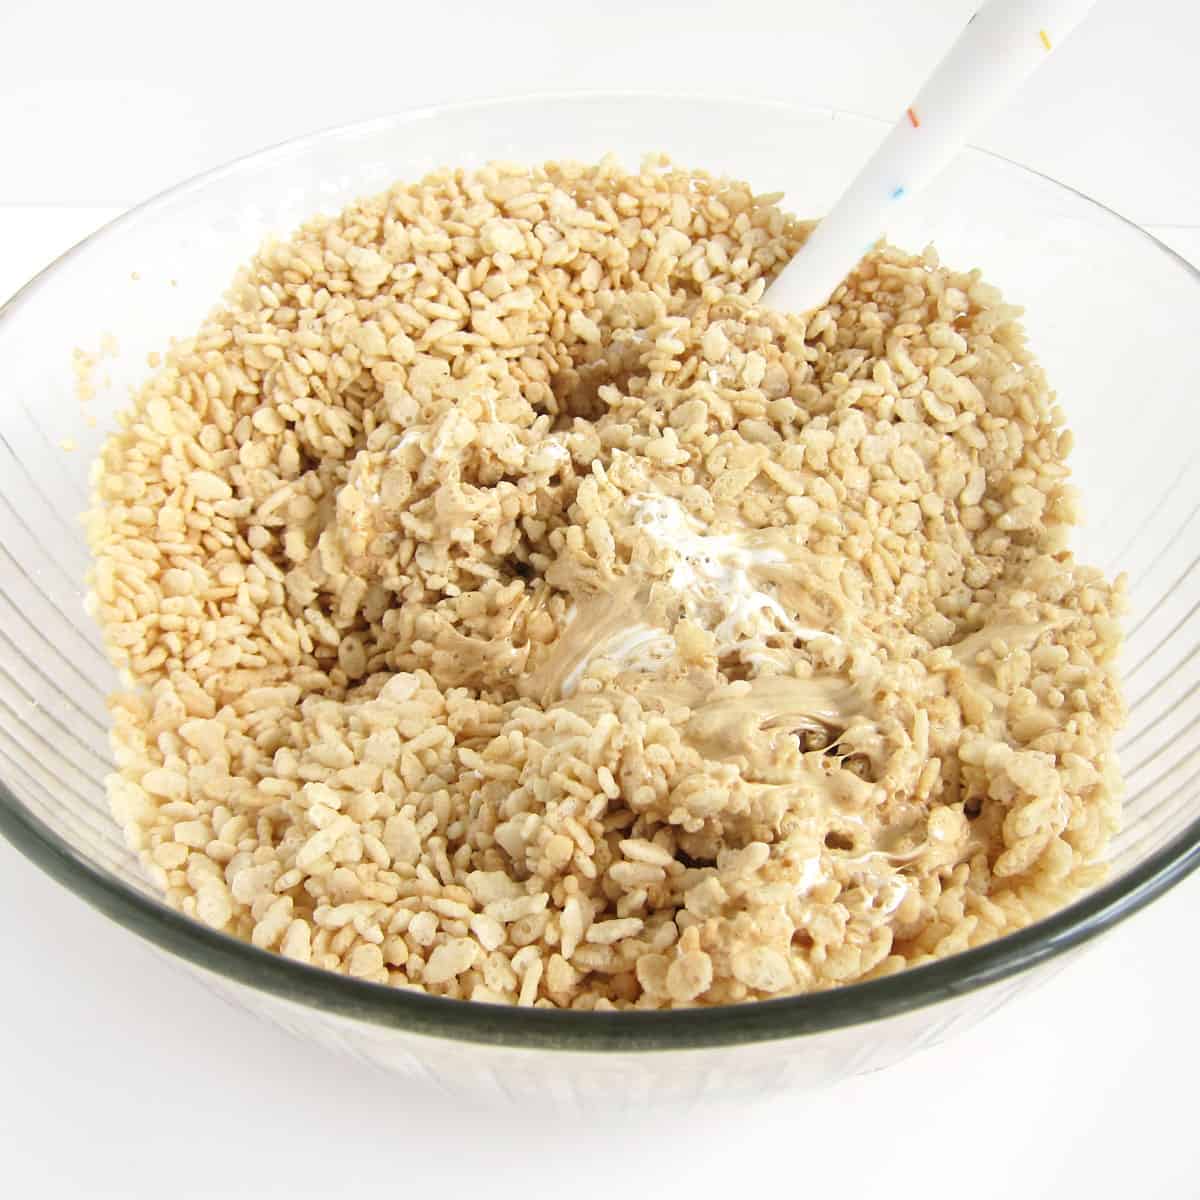 mixing Fluffernutter Rice Krispie Treats in a bowl.